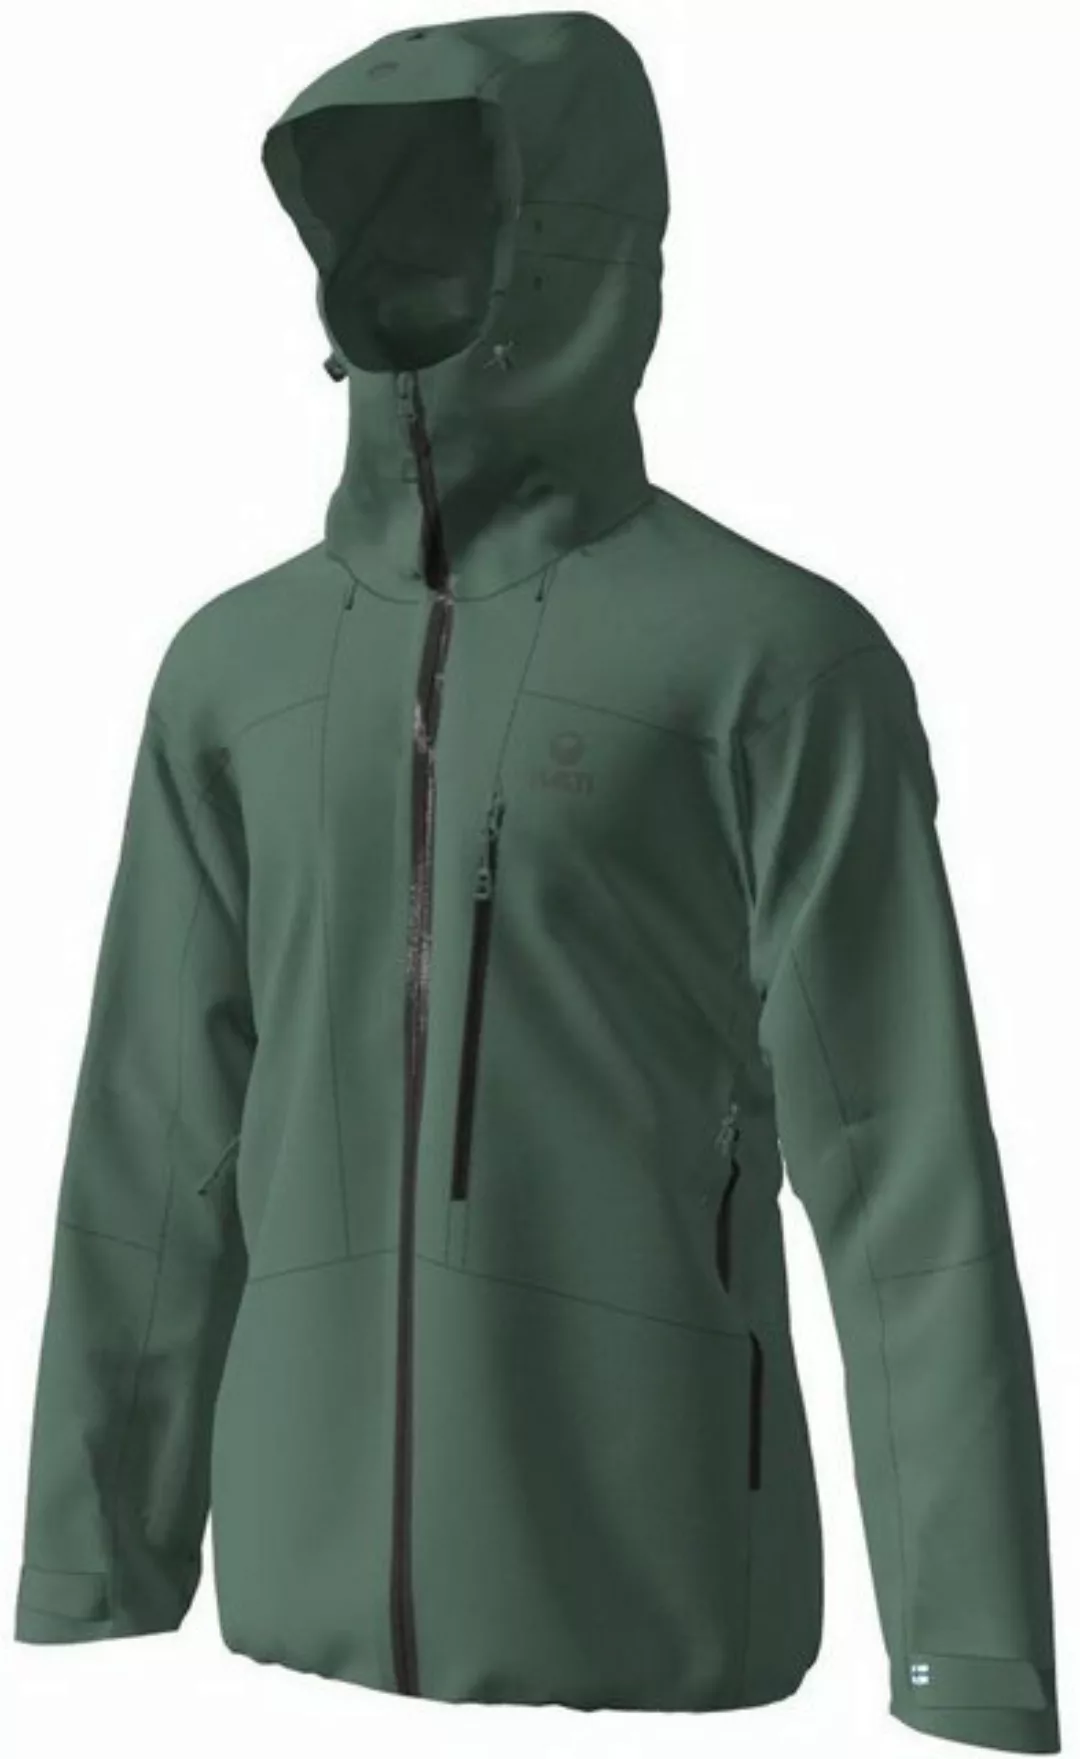 HALTI Outdoorjacke Juonto M DX Nano Jacket günstig online kaufen